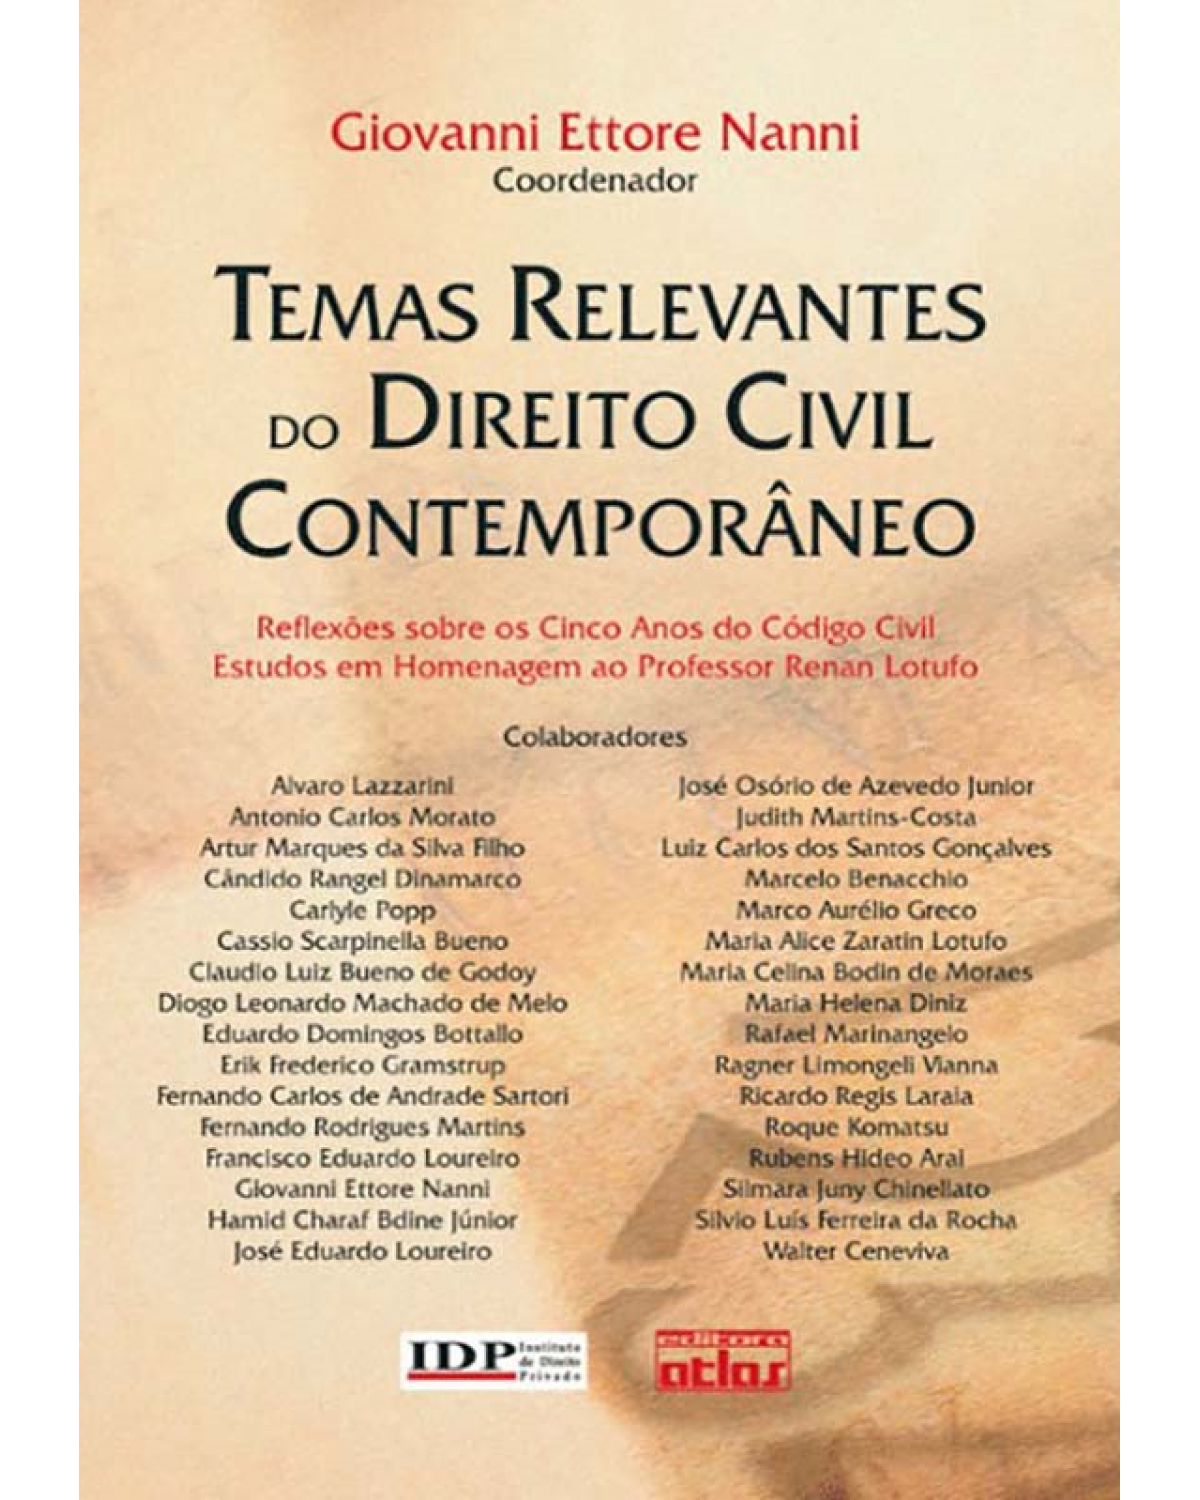 Temas relevantes do direito civil contemporâneo - Reflexões sobre os 5 anos do código civil - Estudos em homenagem ao professor Renan Lotufo - 1ª Edição | 2008